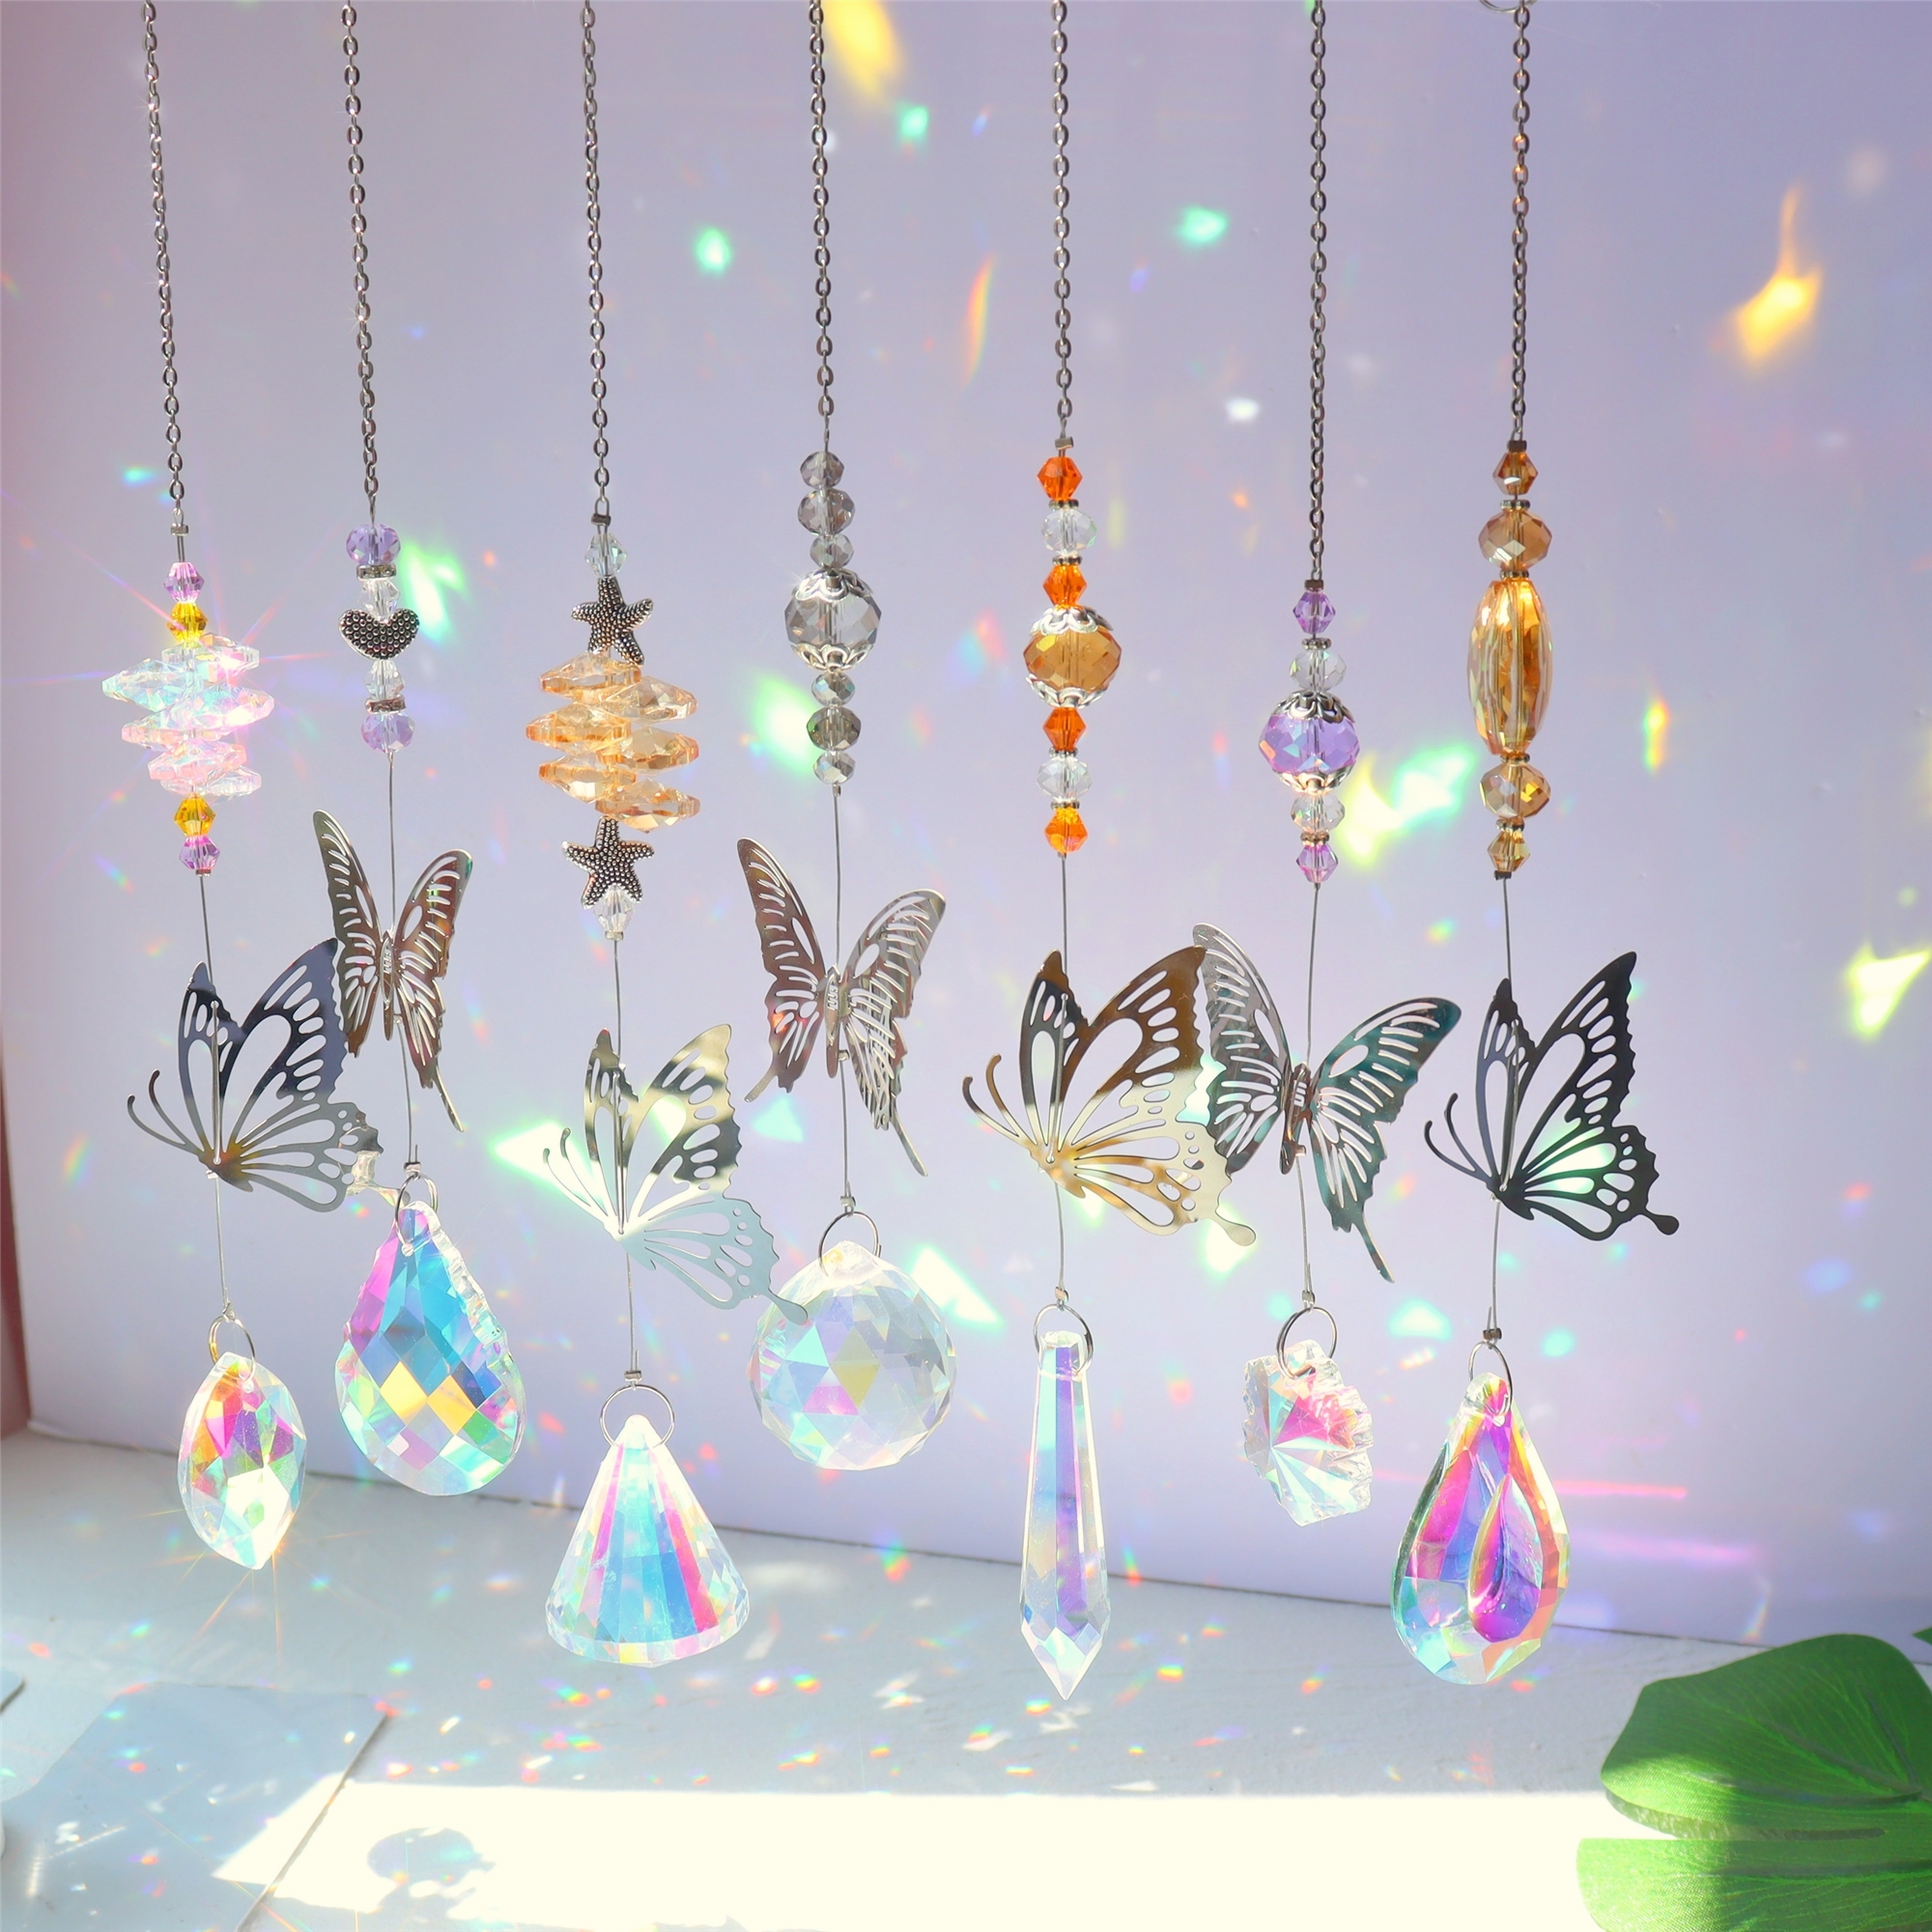 6 pièces cristaux colorés Suncatcher suspendu Catcher de soleil avec  pendentif en chaîne Ornement Boules de cristal pour fenêtre Accueil Jardin